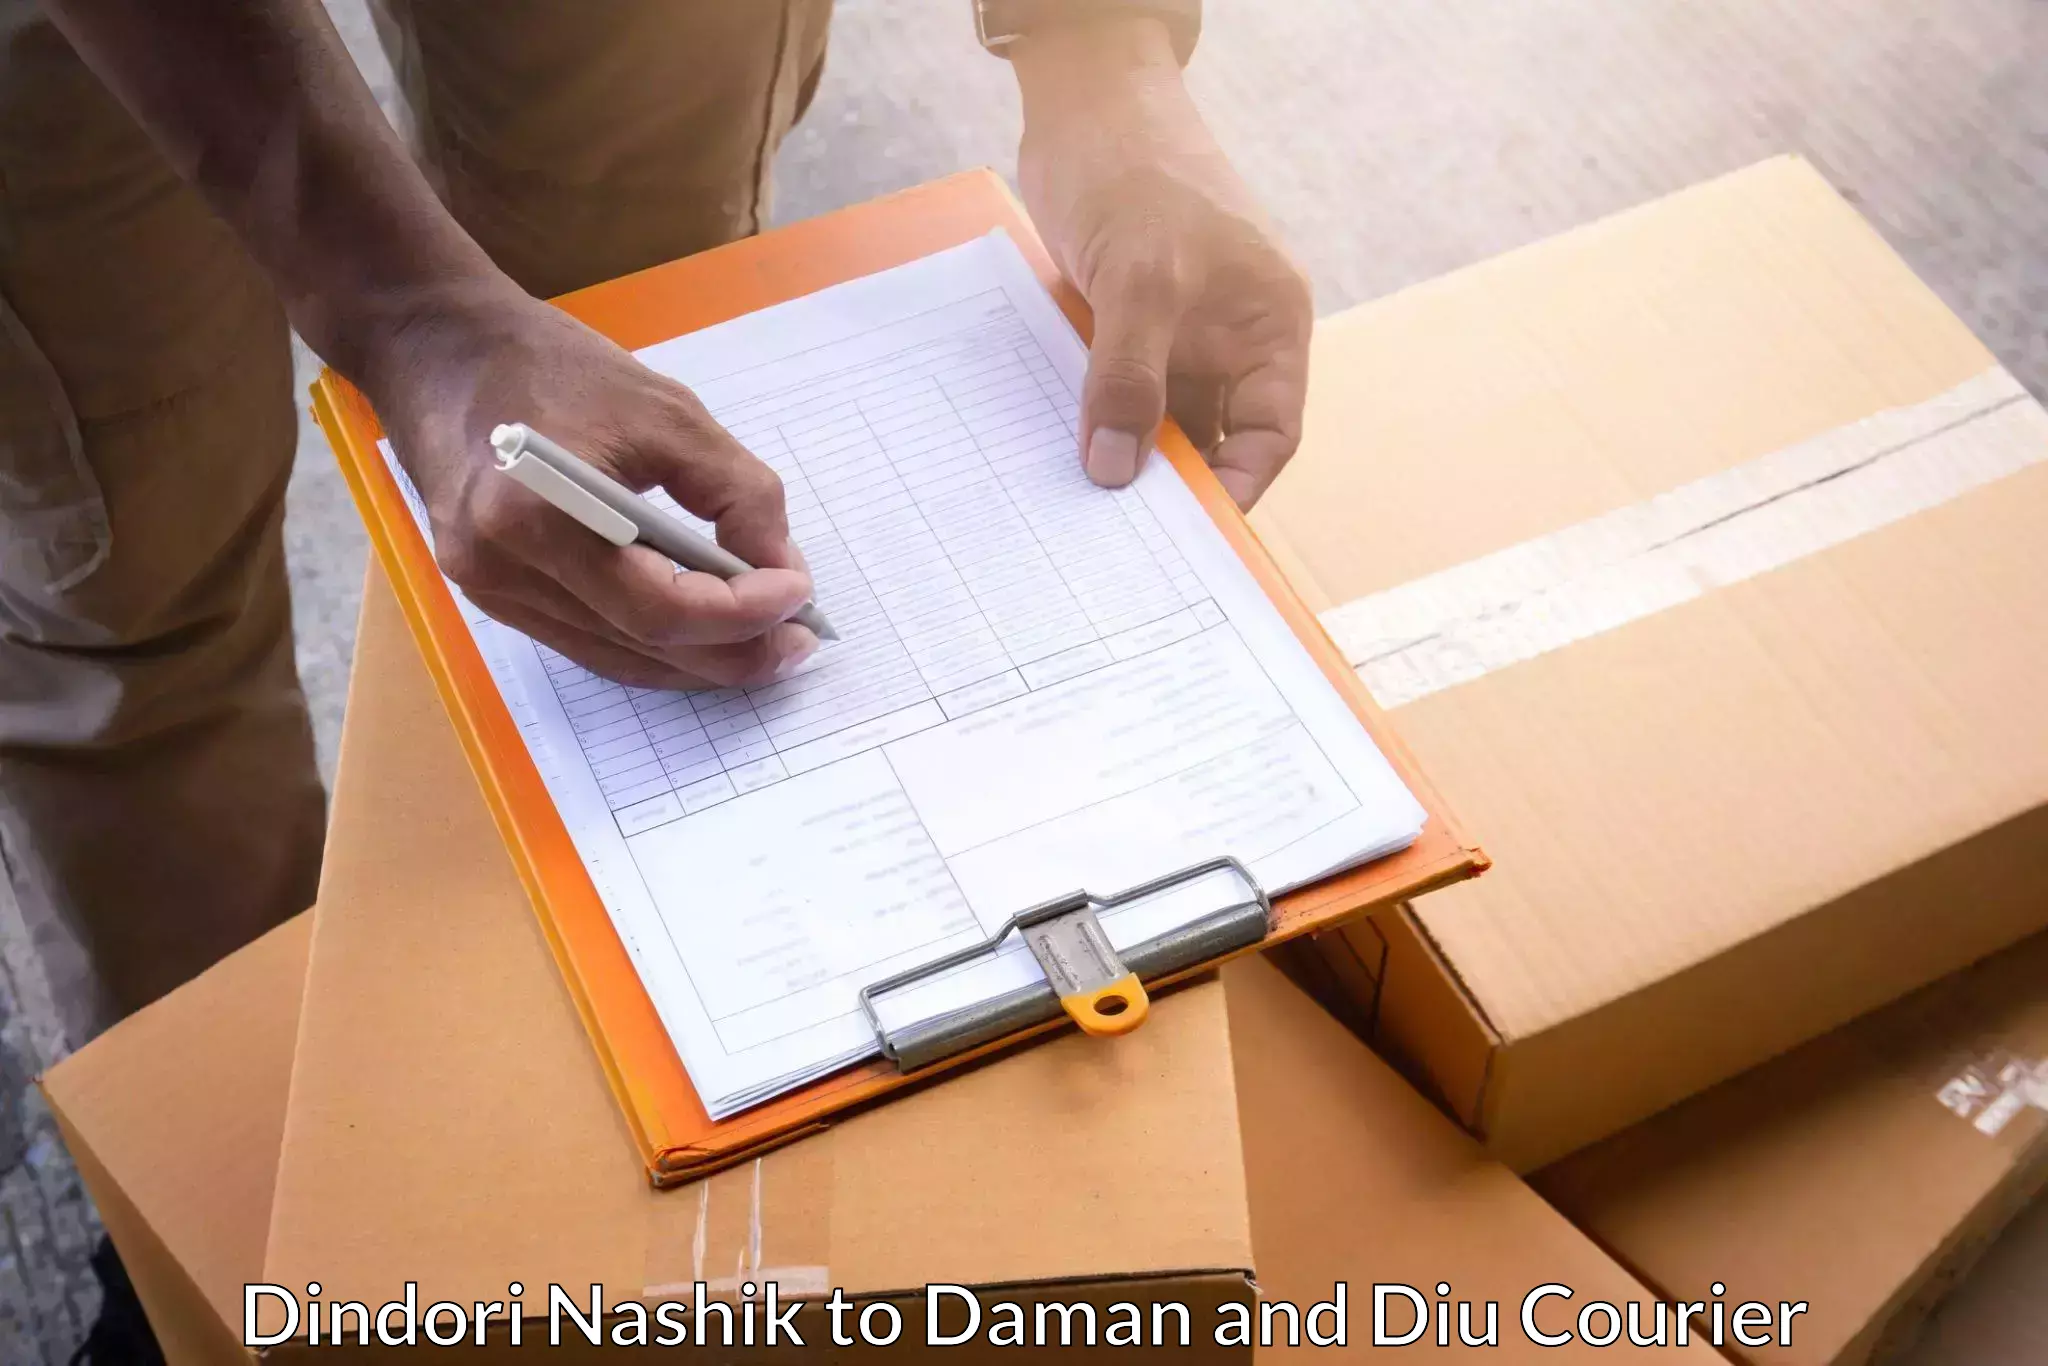 Special handling courier Dindori Nashik to Daman and Diu